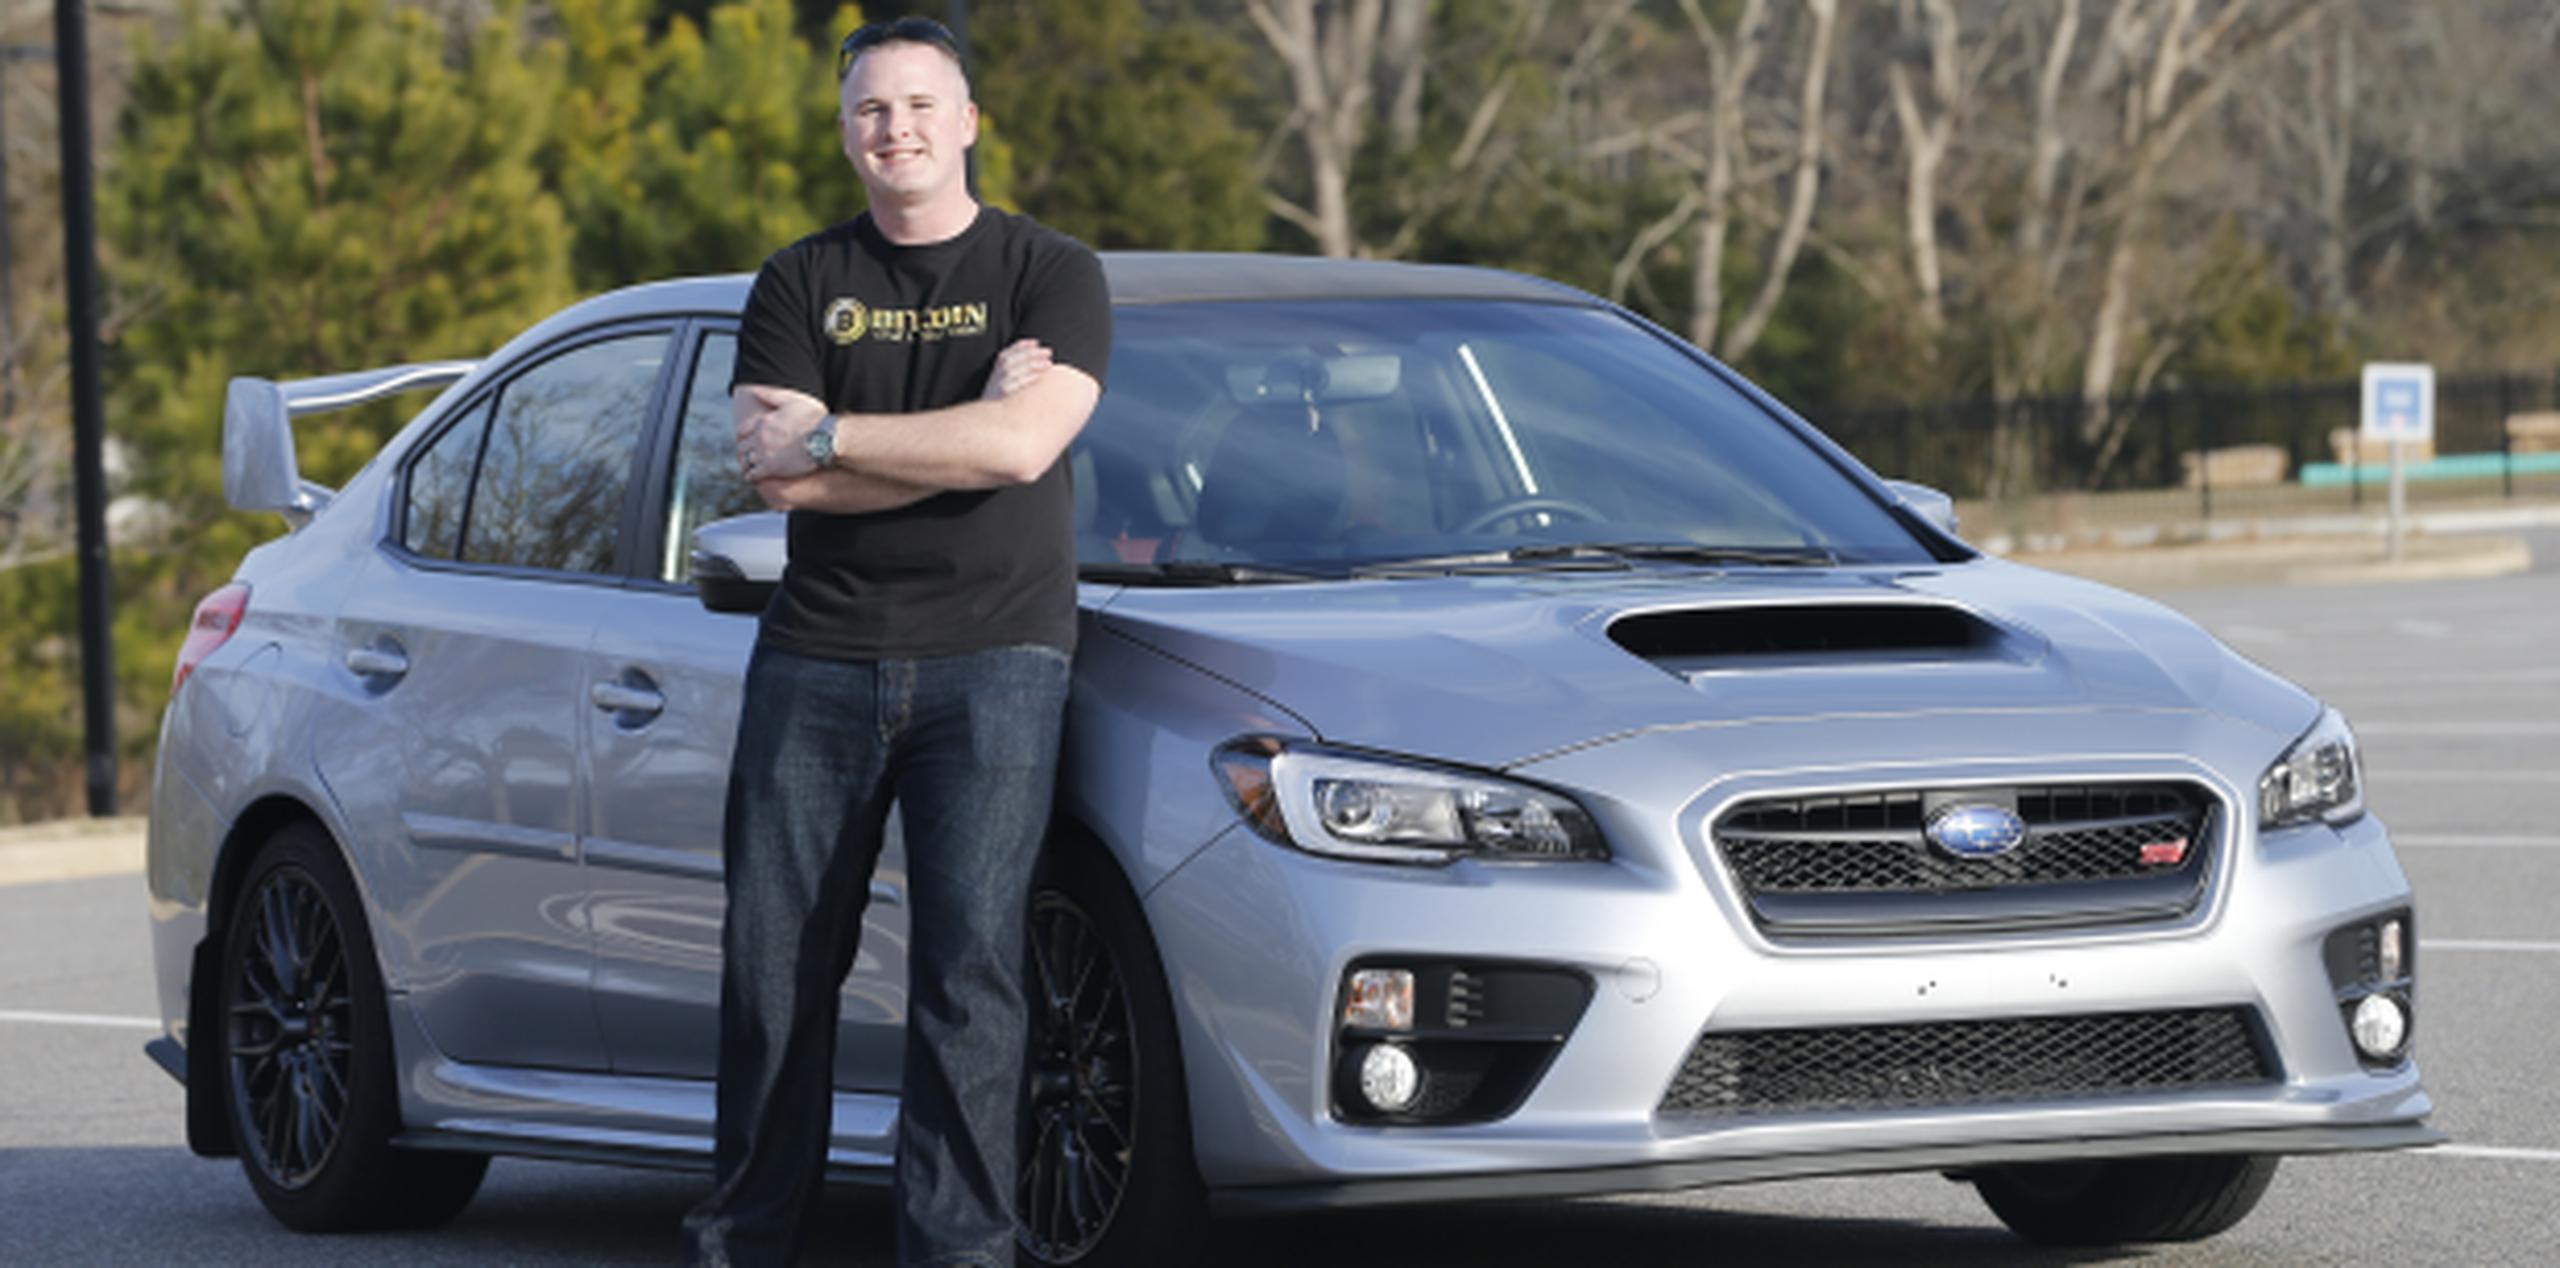 Jonathan Cypert posa al lado del auto que compró para su esposa utilizando como pago bitcoins. (AP)